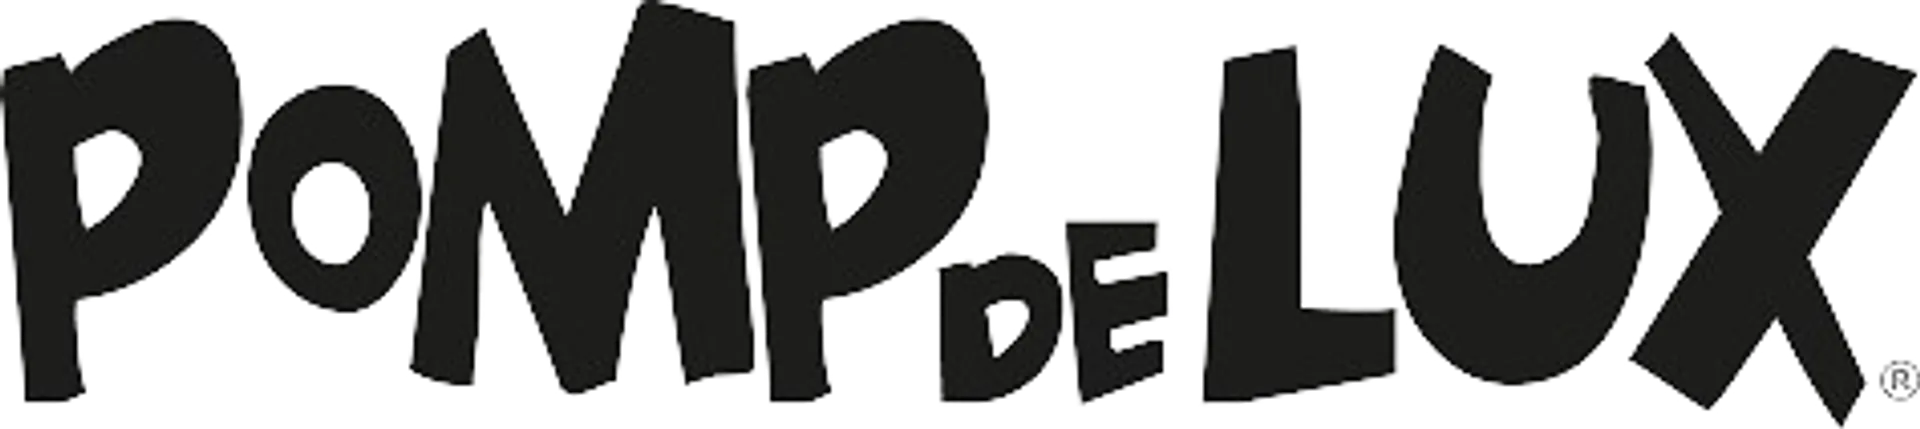 POMP DE LUX logo of current catalogue